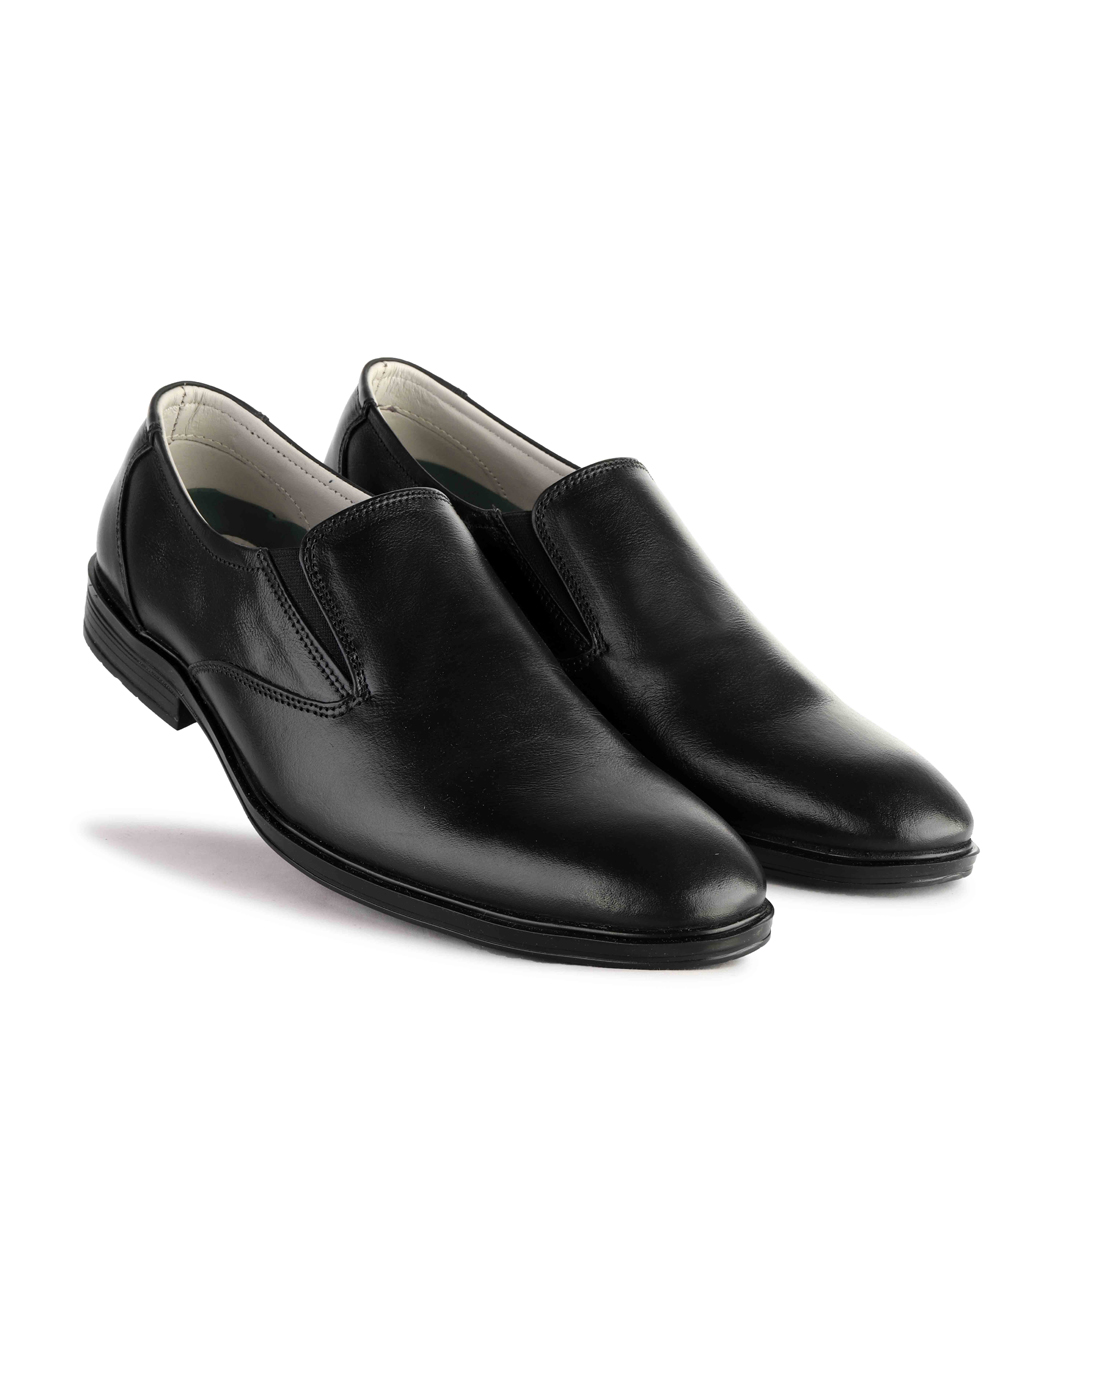 Plain Black Leather Shoes